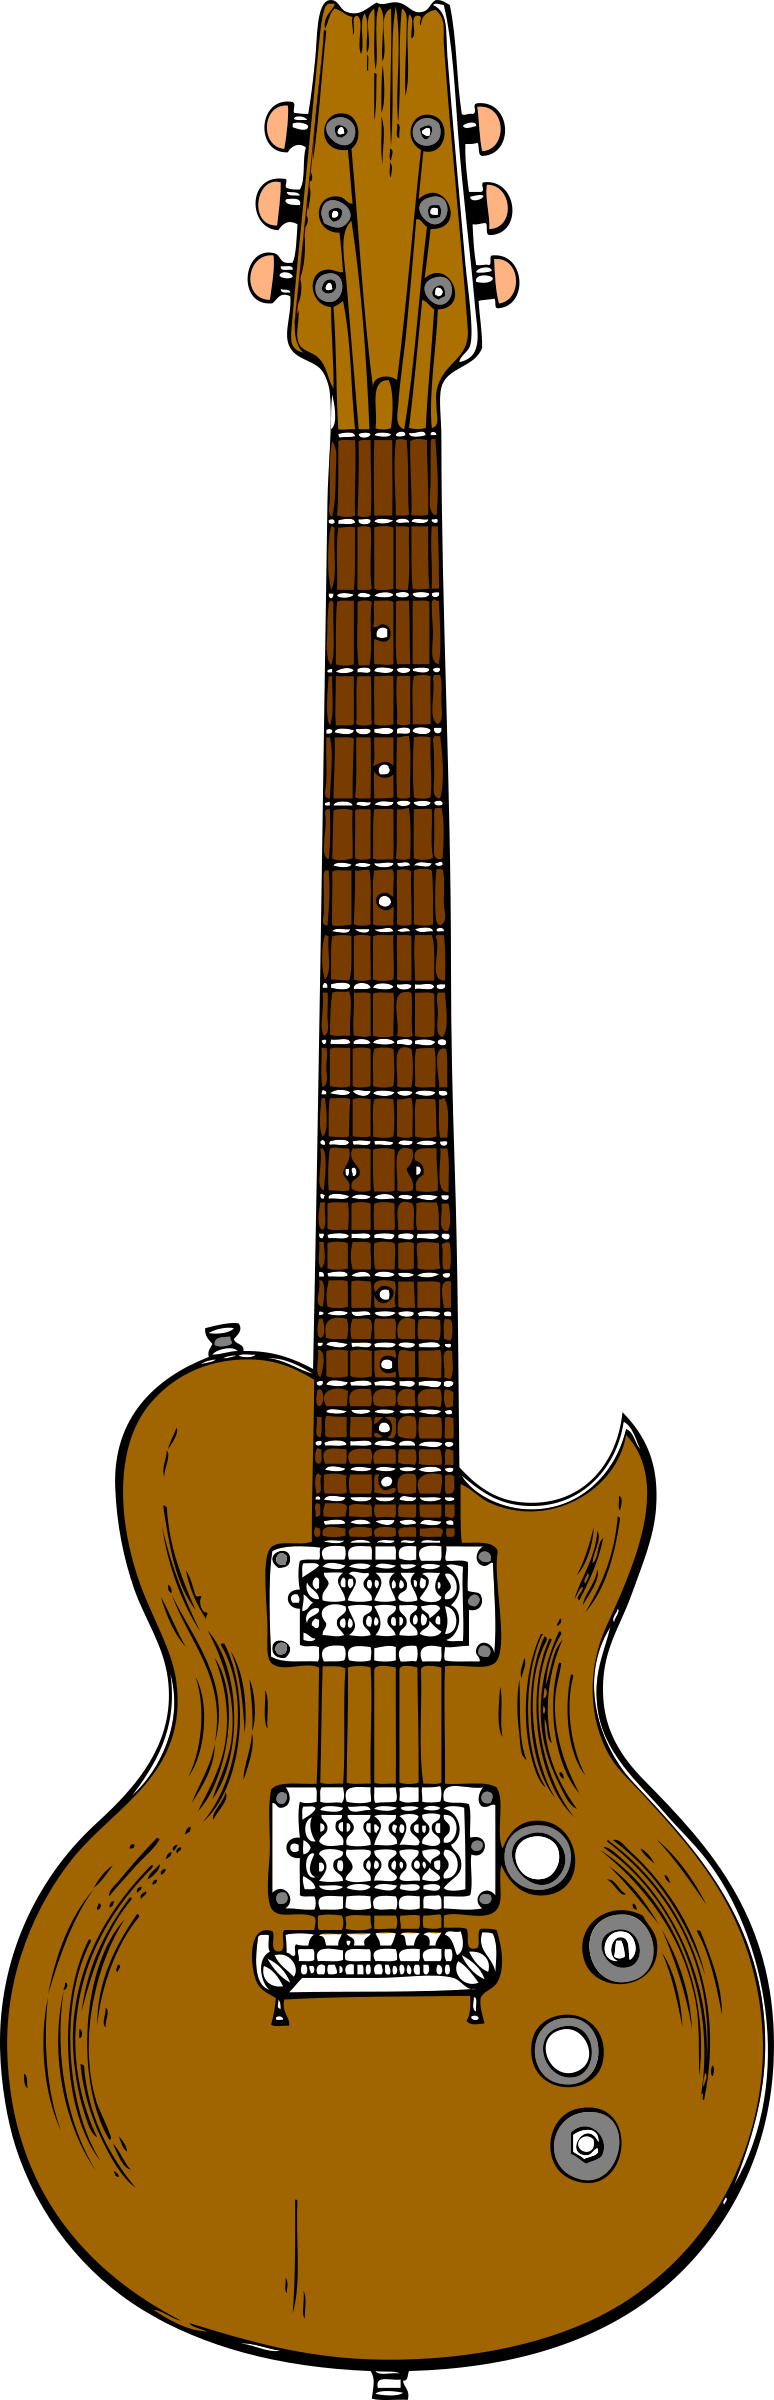 guitar clipart wooden